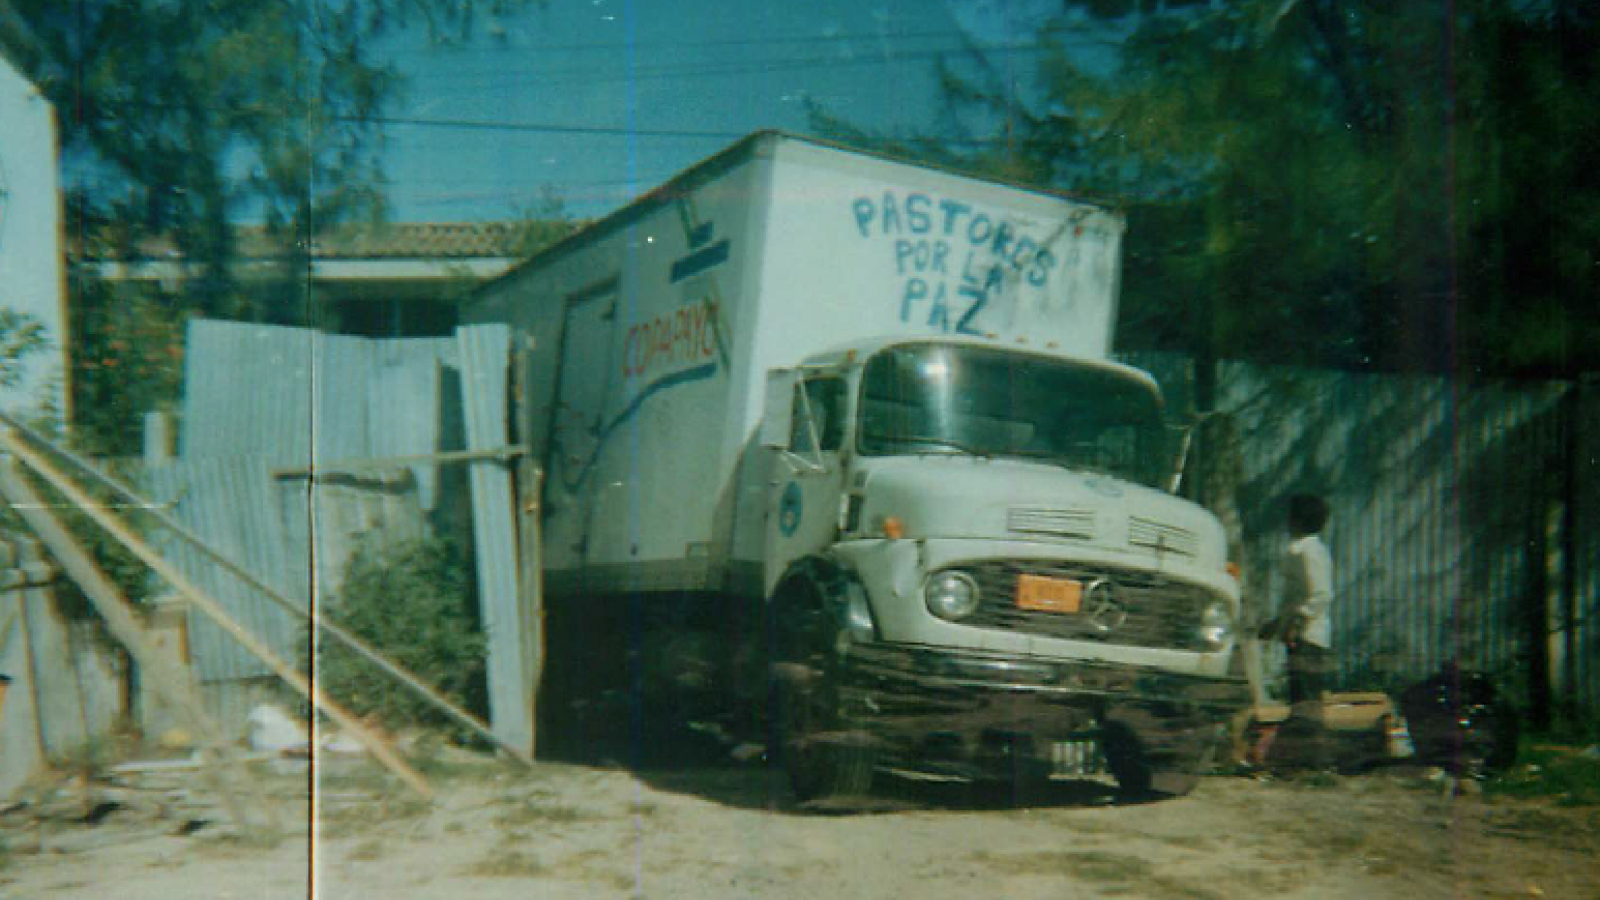 Pastors for Peace Truck